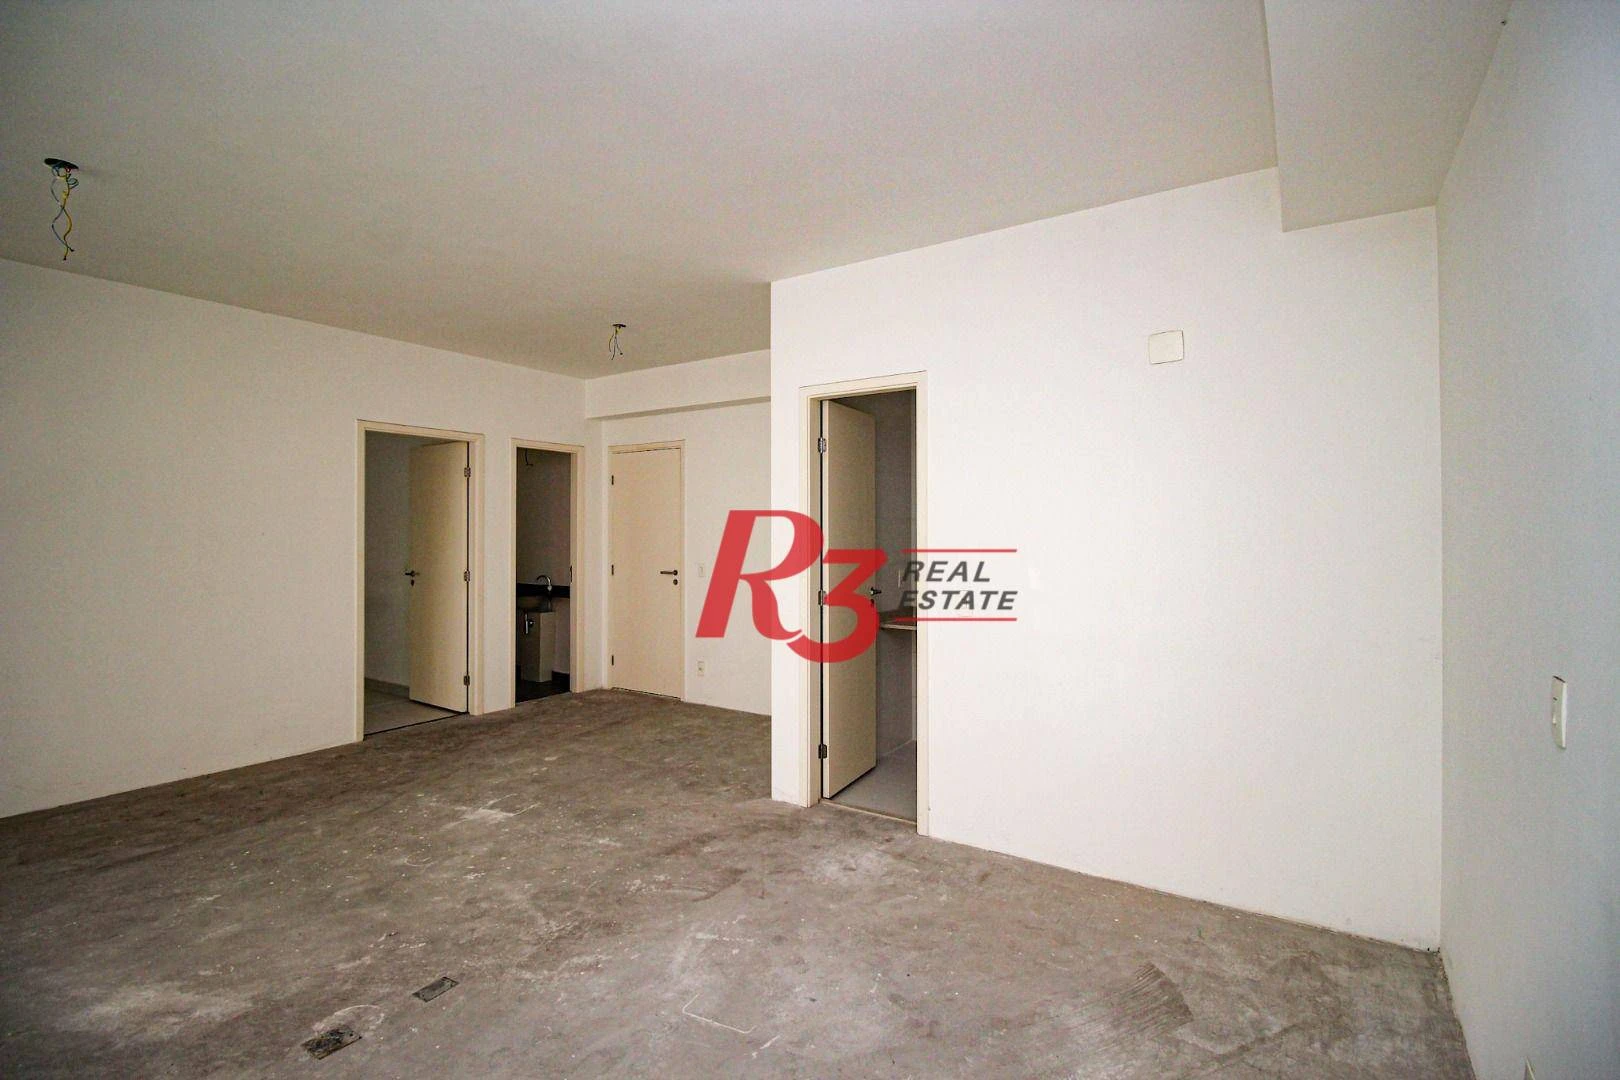 Apartamento à venda, 57 m² por R$ 585.000,00 - Gonzaga - Santos/SP